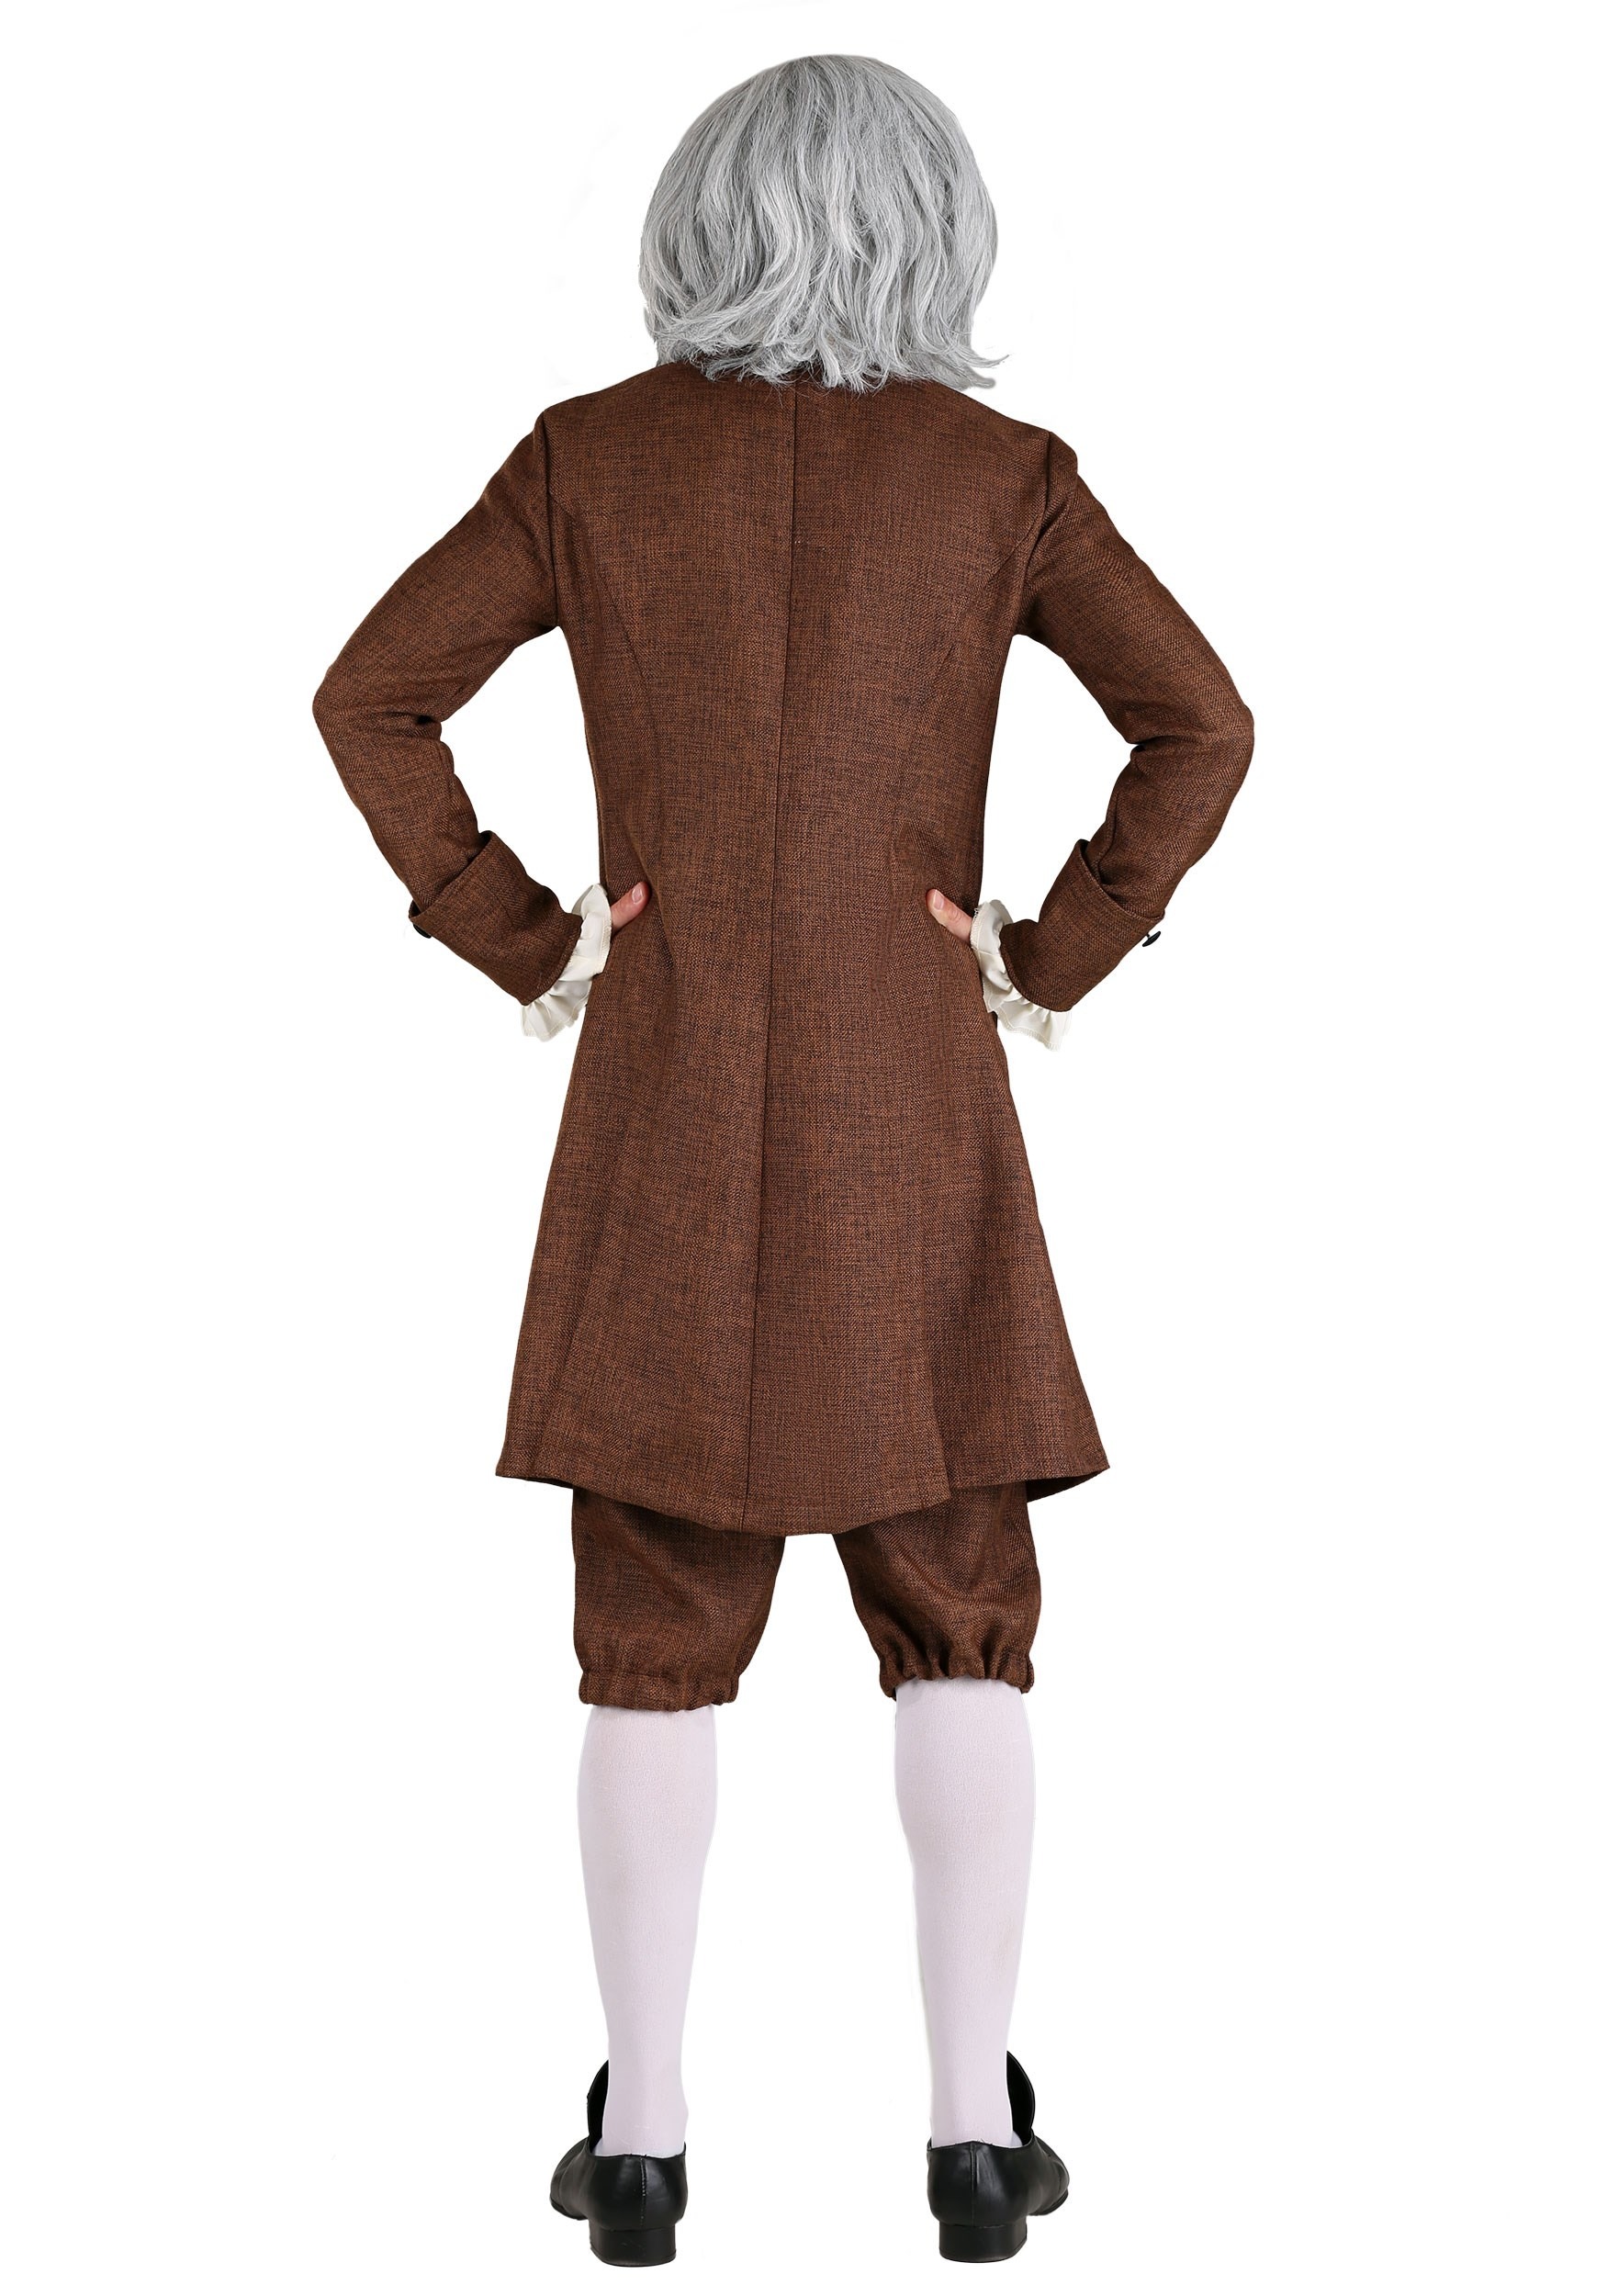 Colonial Benjamin Franklin Costume For Men's